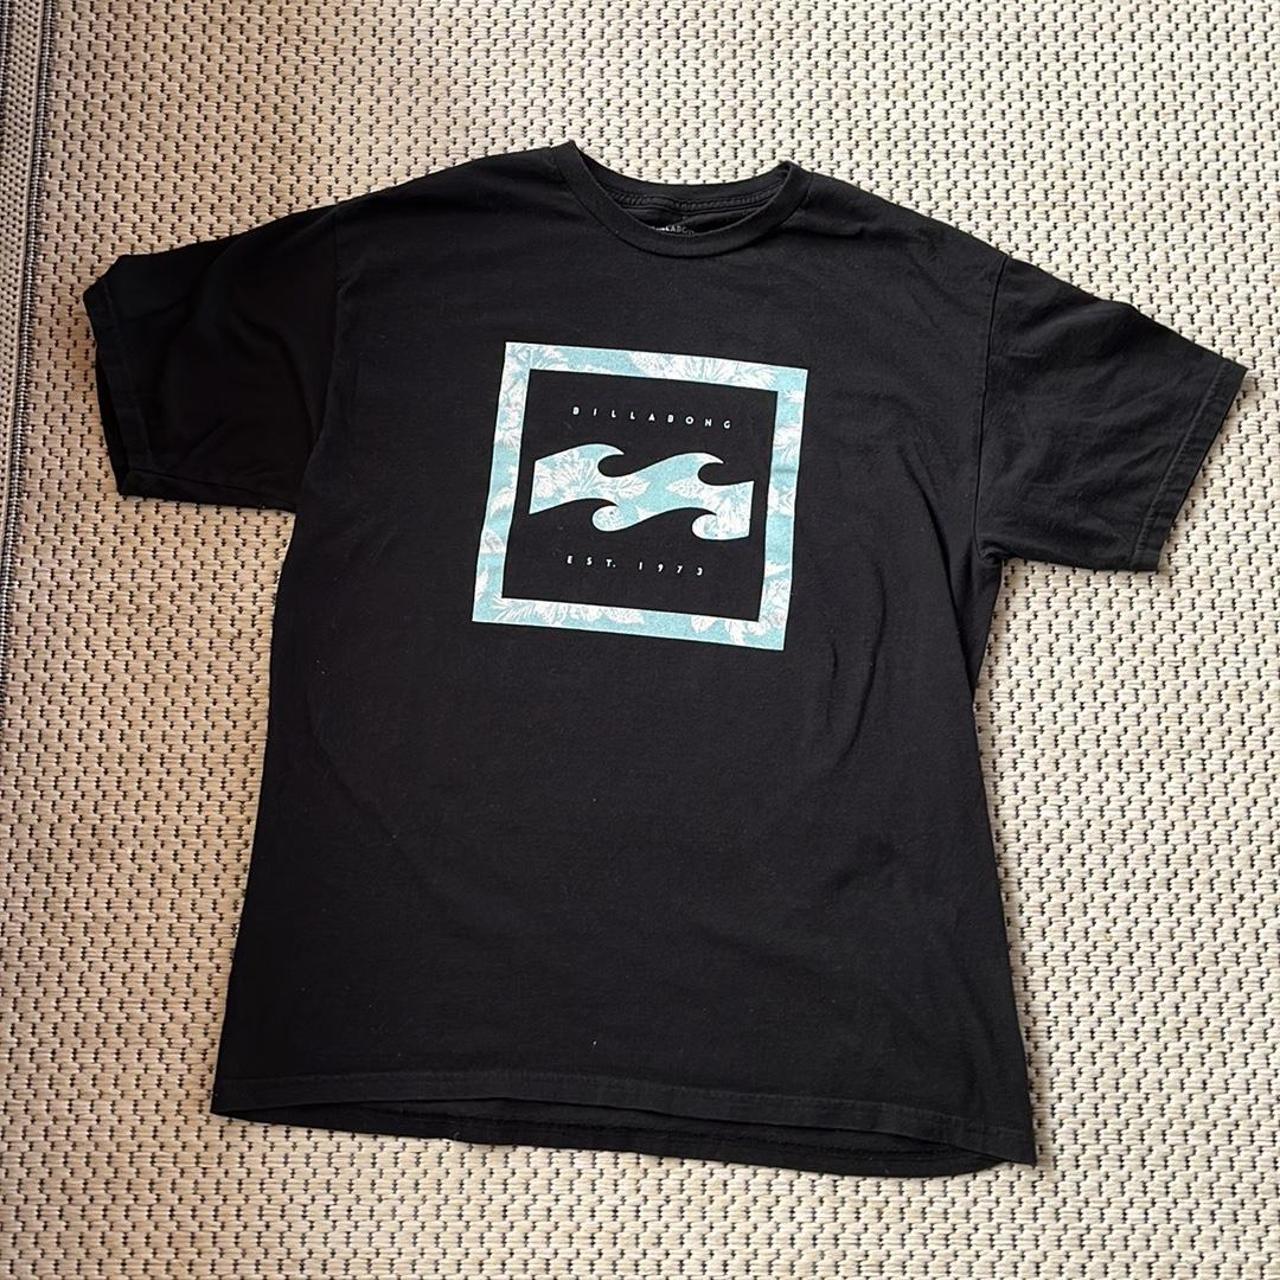 Product Image 1 - Billabong Mens Logo Black T-Shirt
Tag